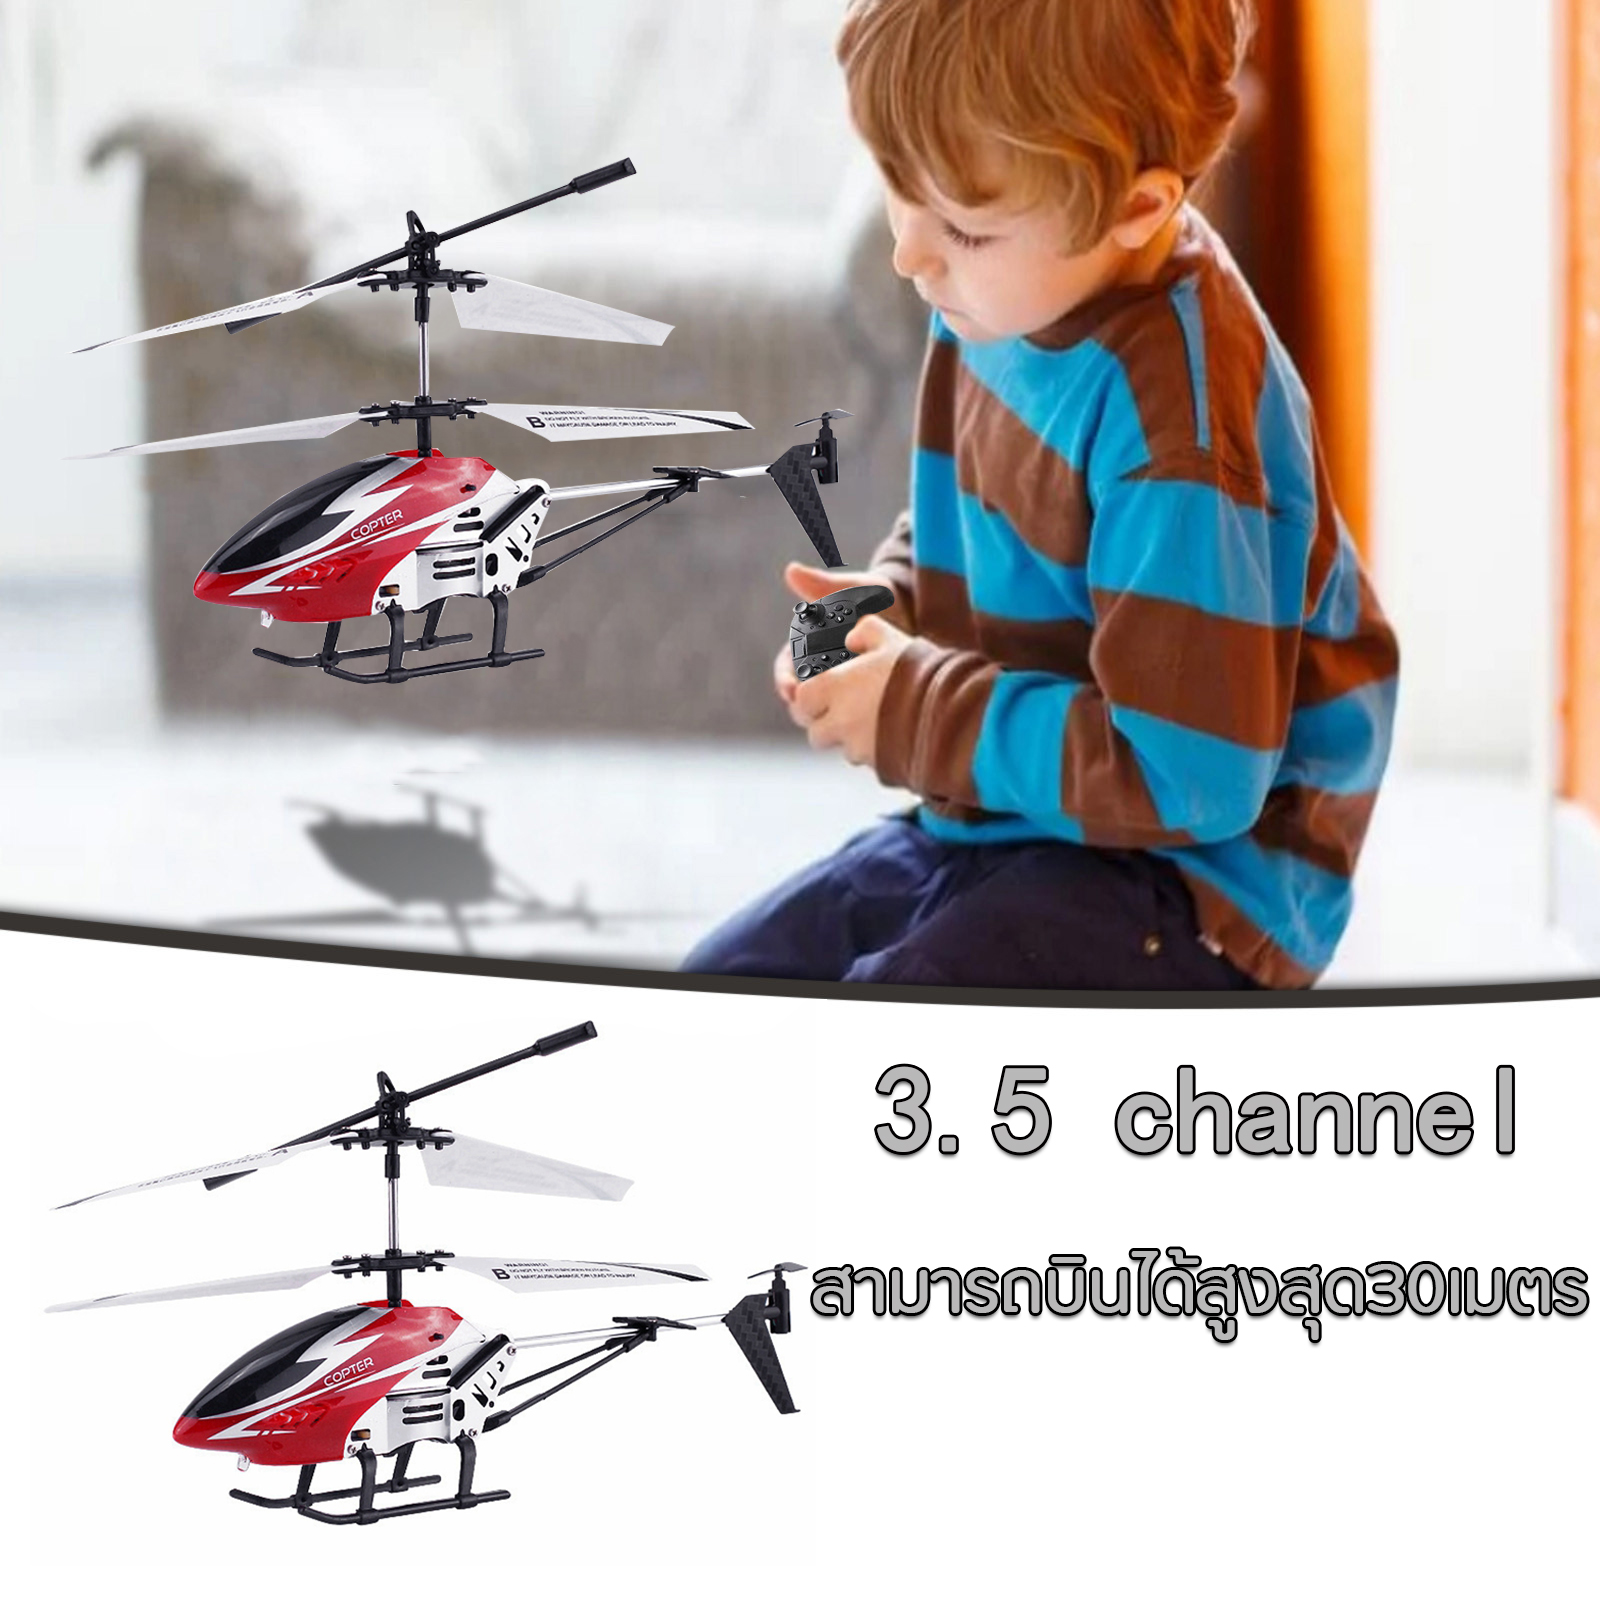 เฮลิคอปเตอร์ เครื่องบินบังคับ Helicopter remote control toy รีโมทคอนโทรลไฟฟ้า บินได้ ไฟกระพริบมือของเล่นสำหรับของขวัญเด็ก